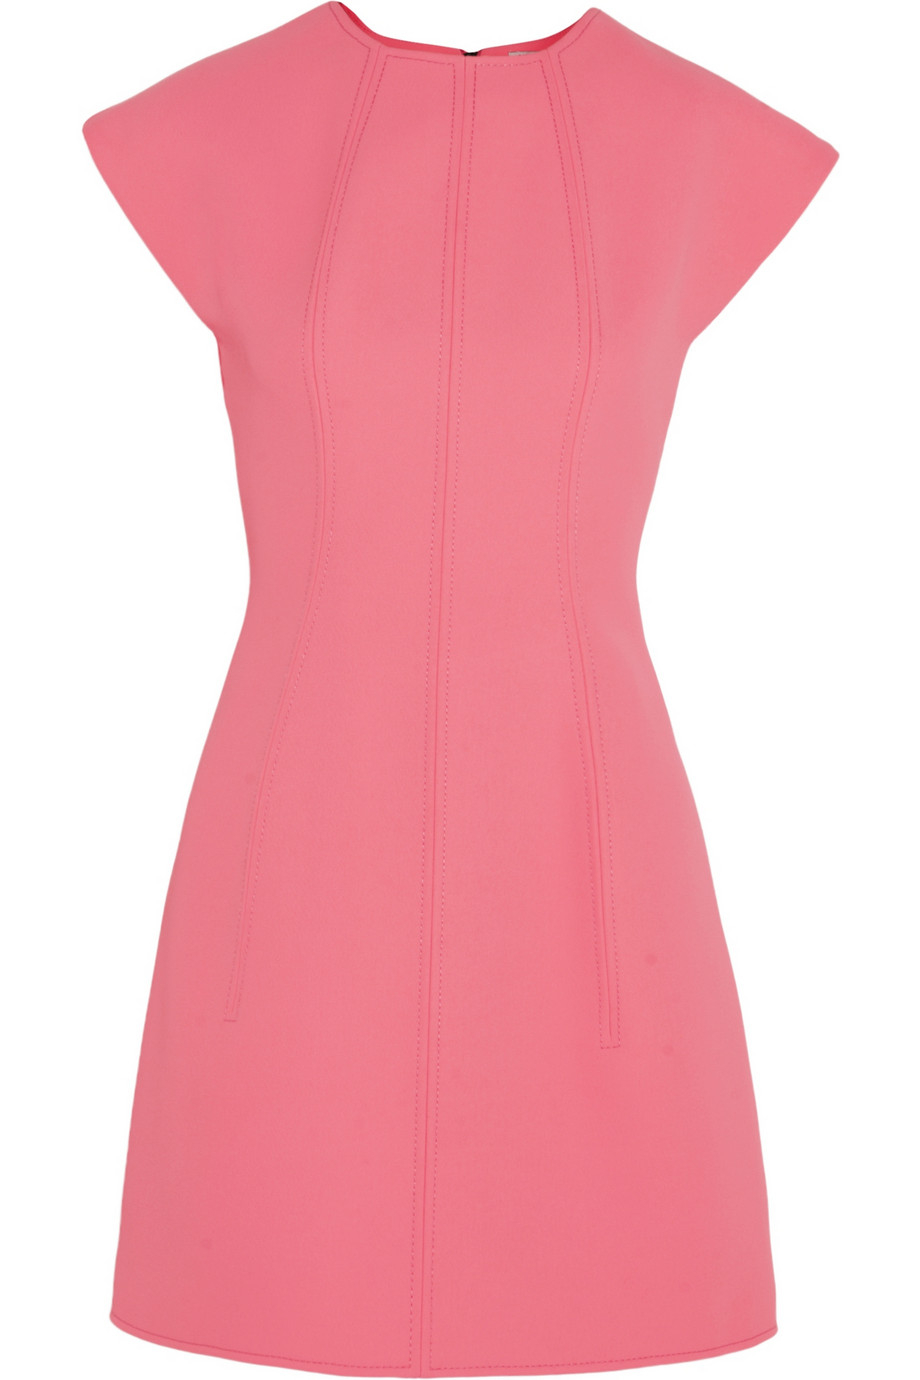 Lyst - Kenzo Neon Neoprene Mini Dress in Pink